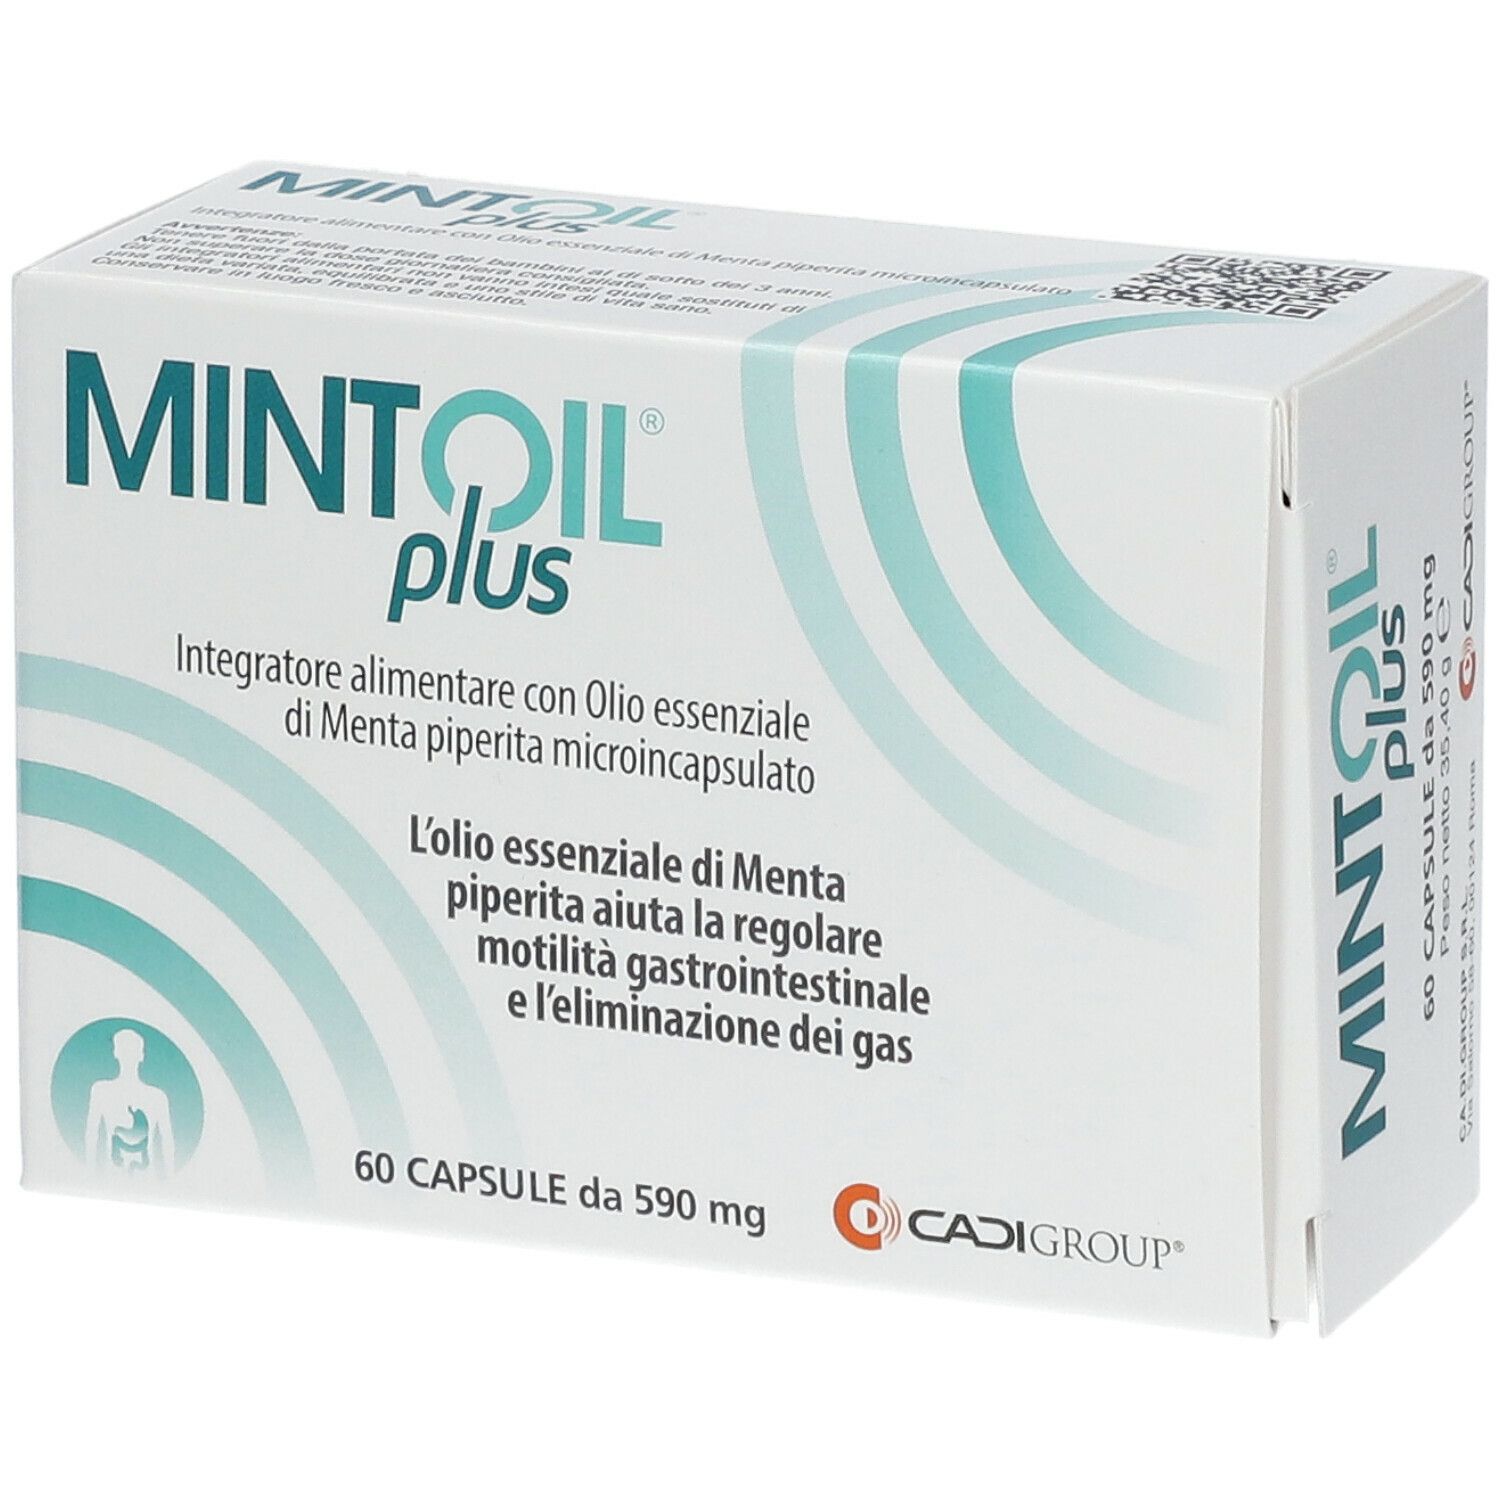 Mintoil® Plus